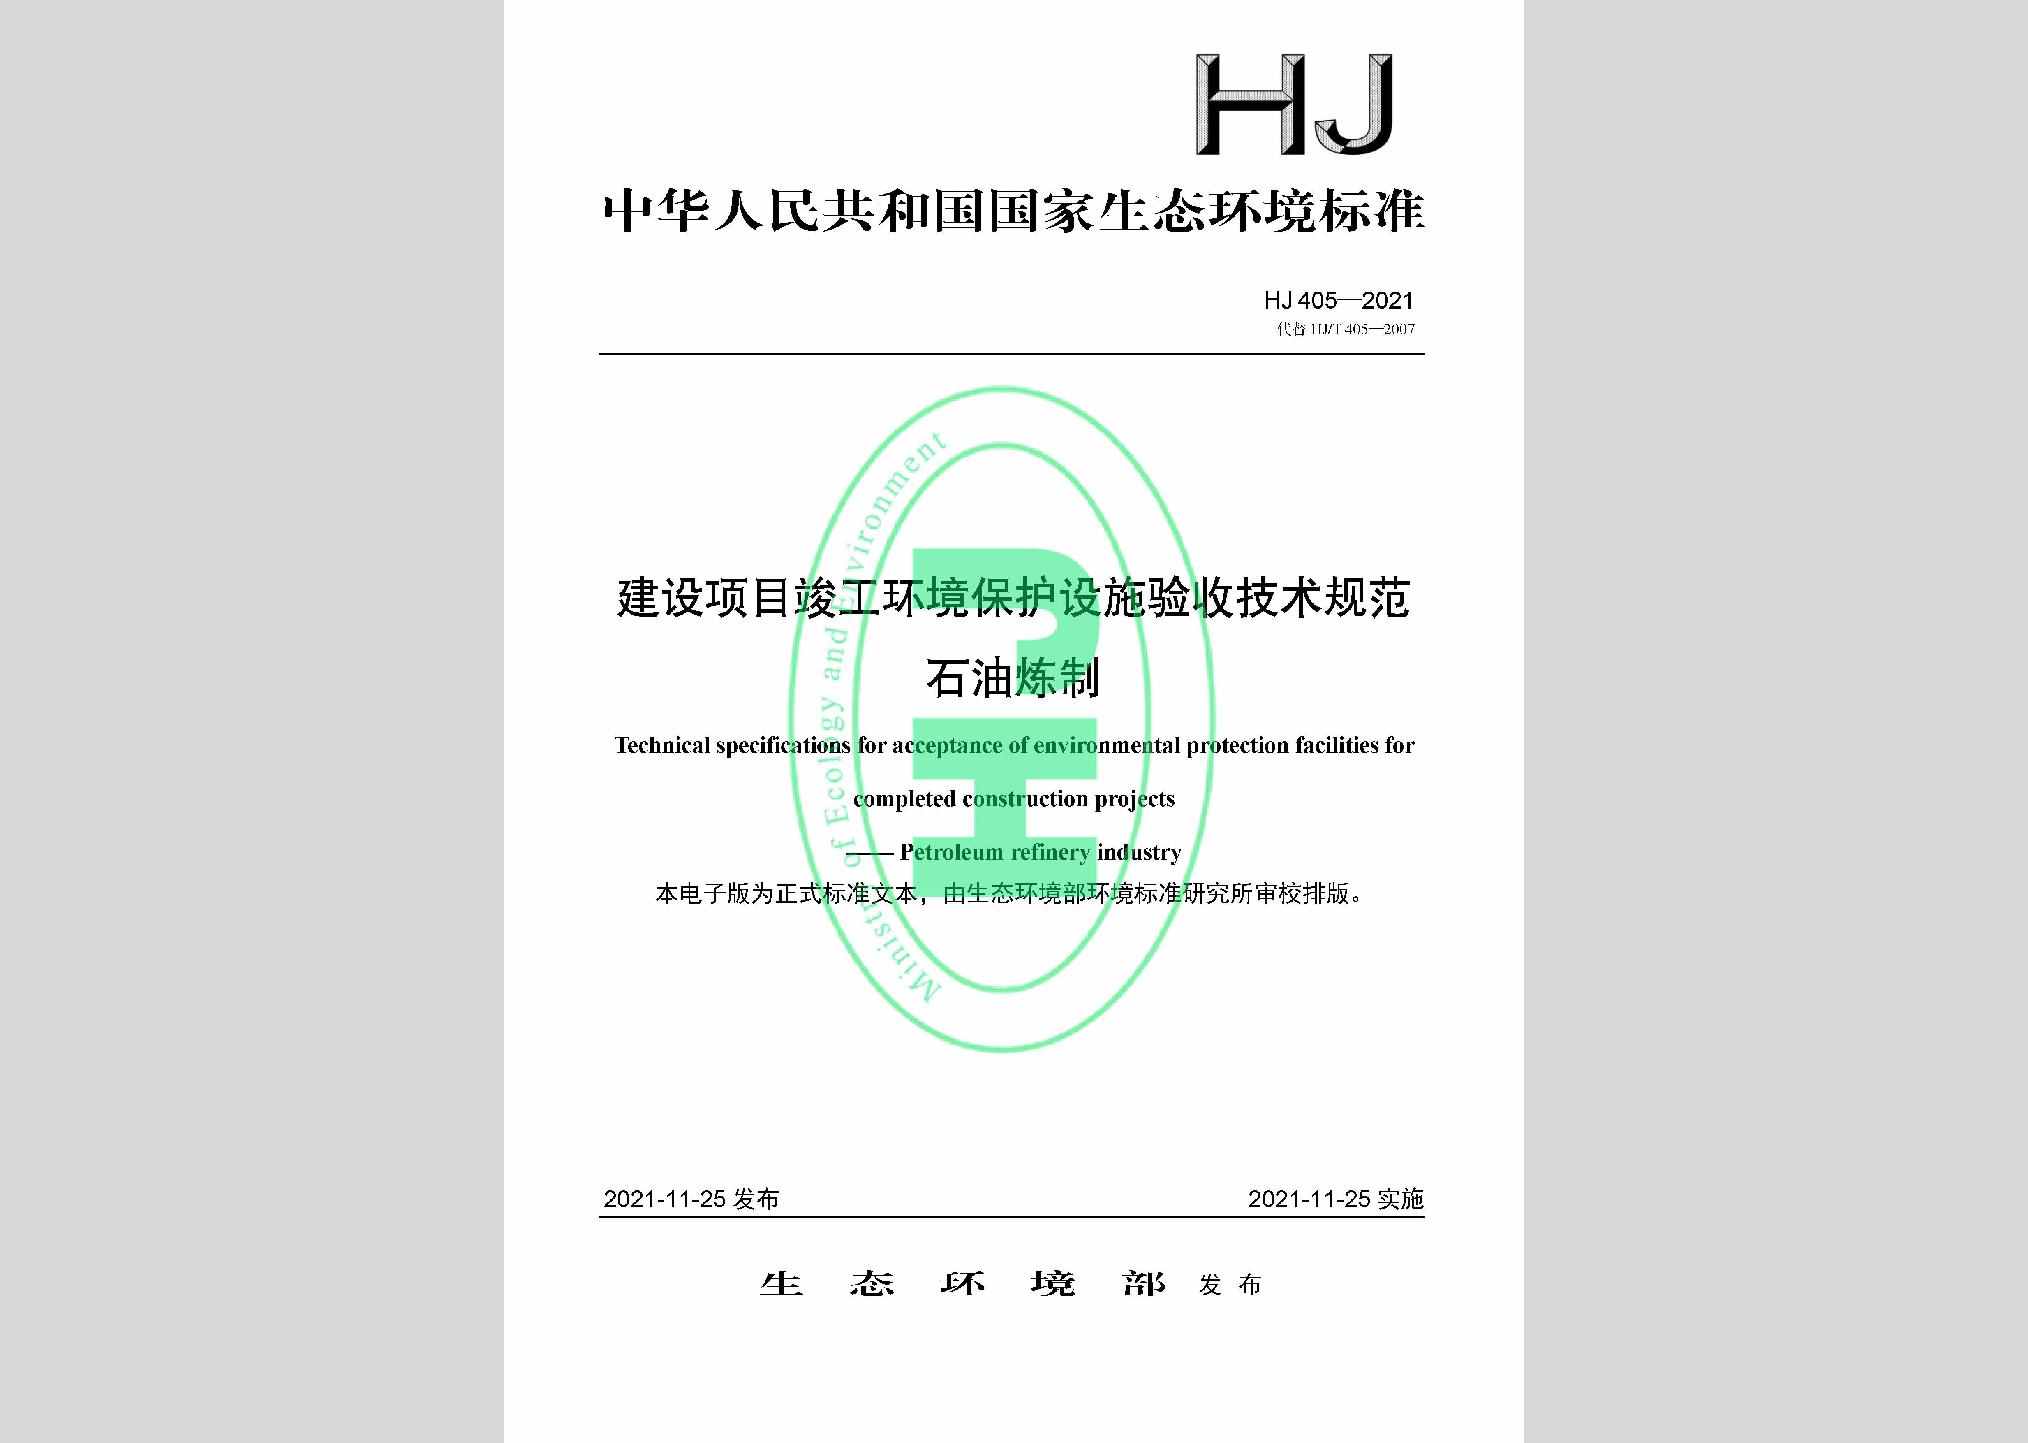 HJ405-2021：建设项目竣工环境保护设施验收技术规范石油炼制